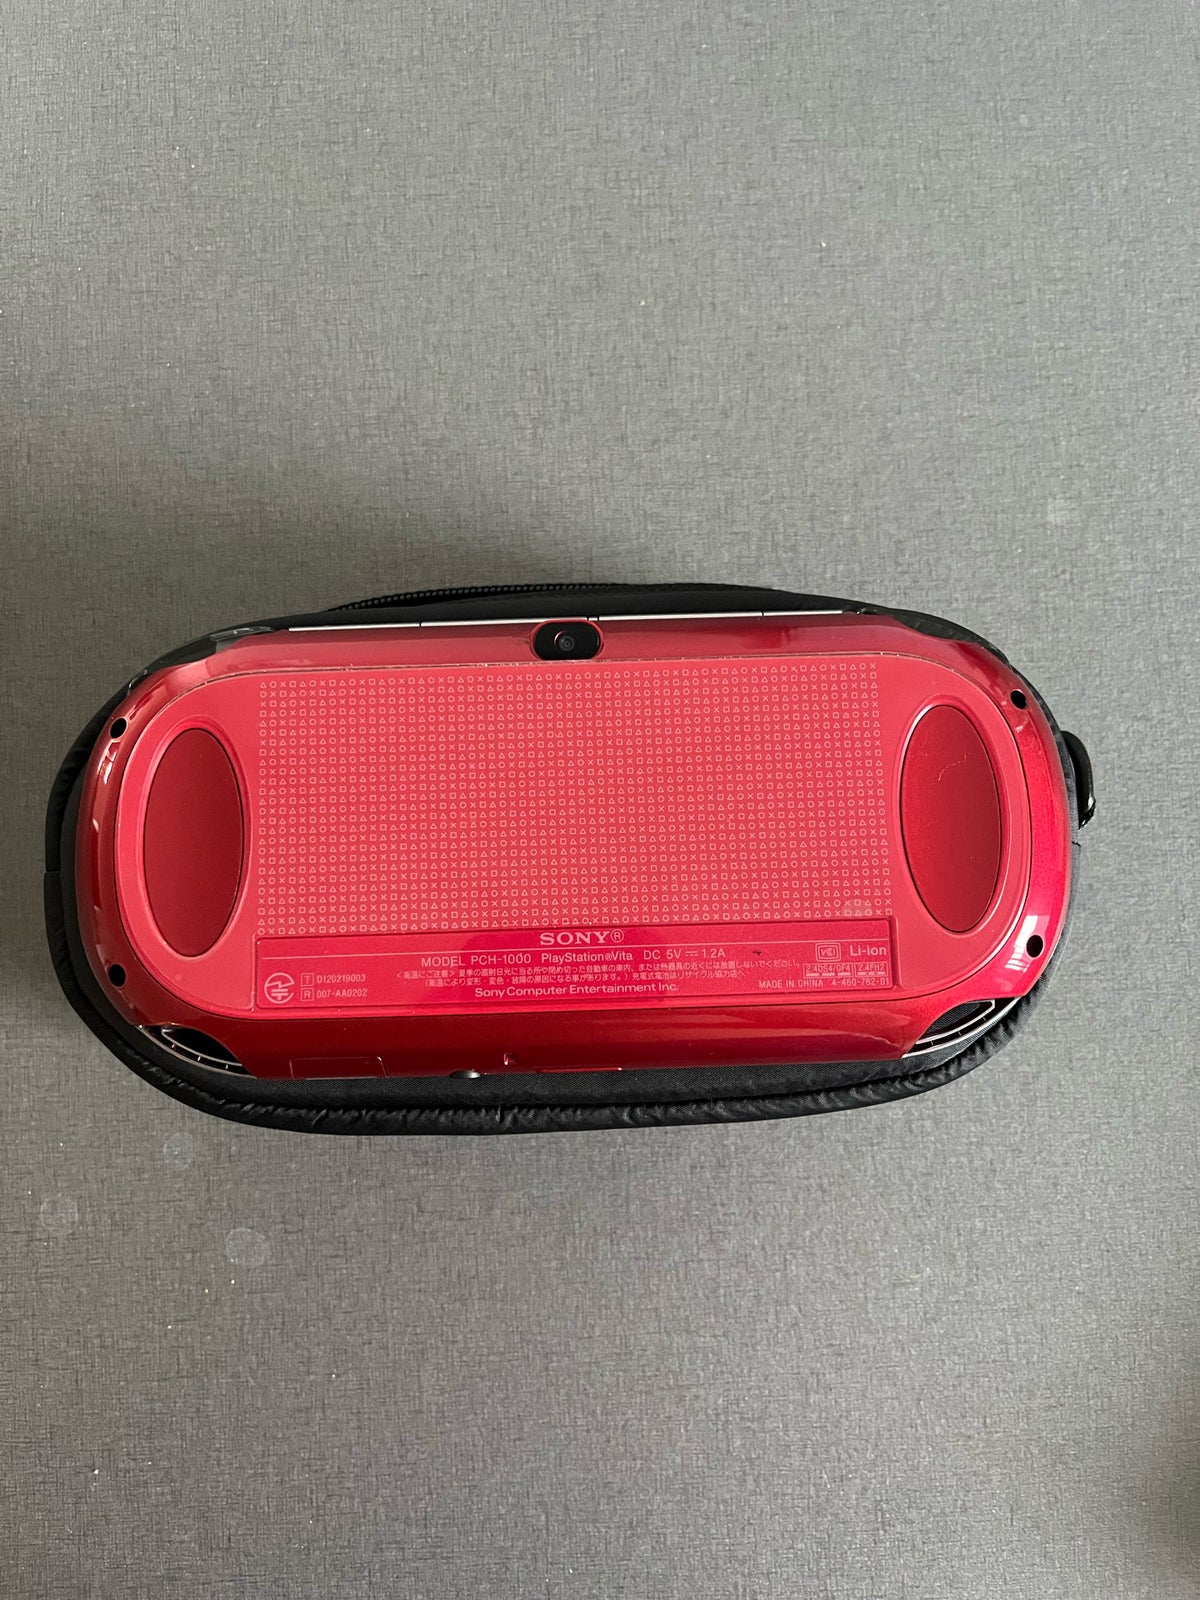 Playstation Vita, 1000 OLED (WiFi), Perfekt